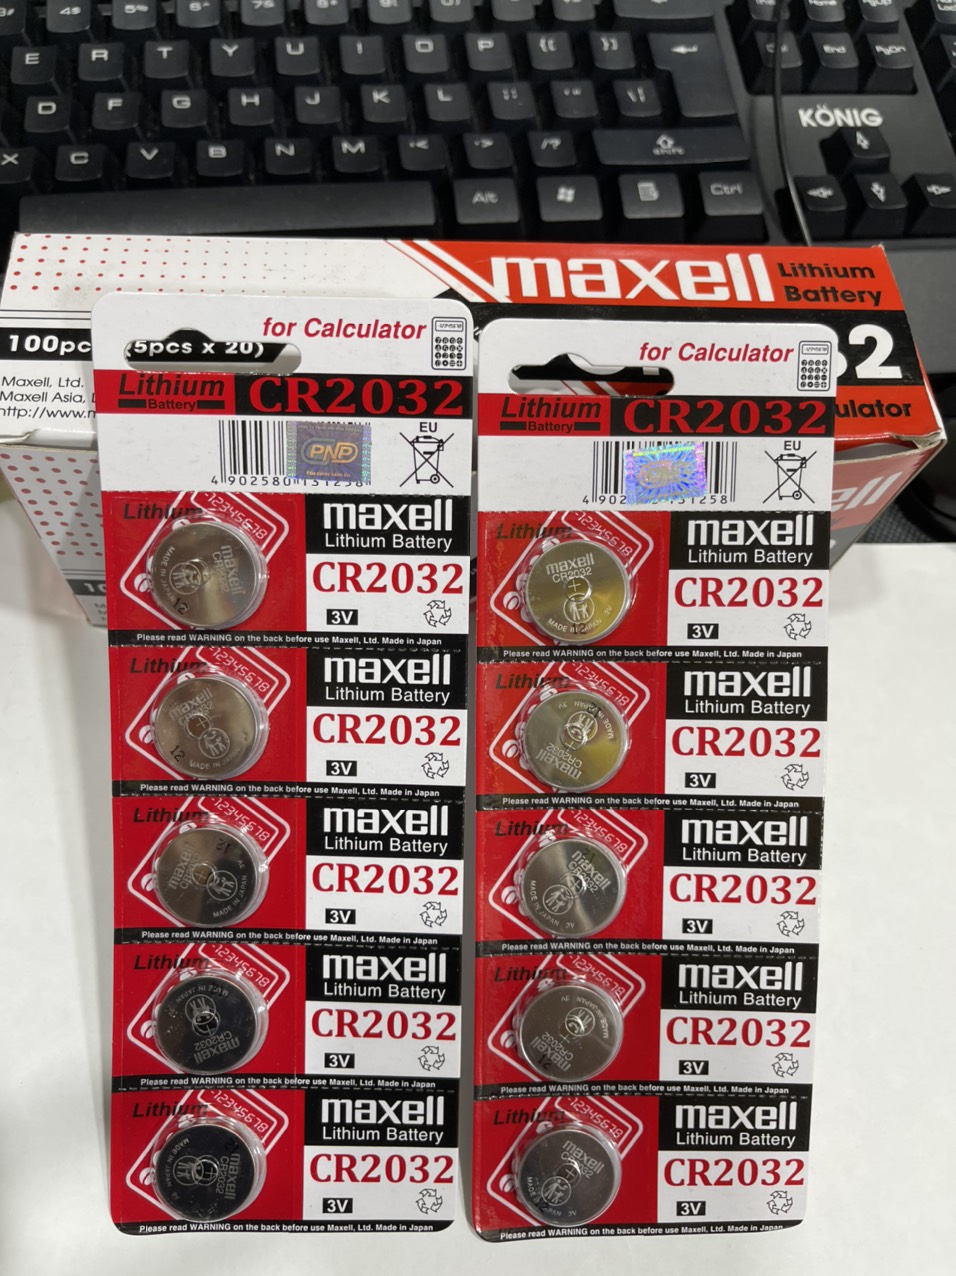 Vĩ 5 viên pin Maxell CR2025-CR2016-CR2032 -CR1220-CR1620-CR1616-CR1632   3V - hàng nhập khẩu